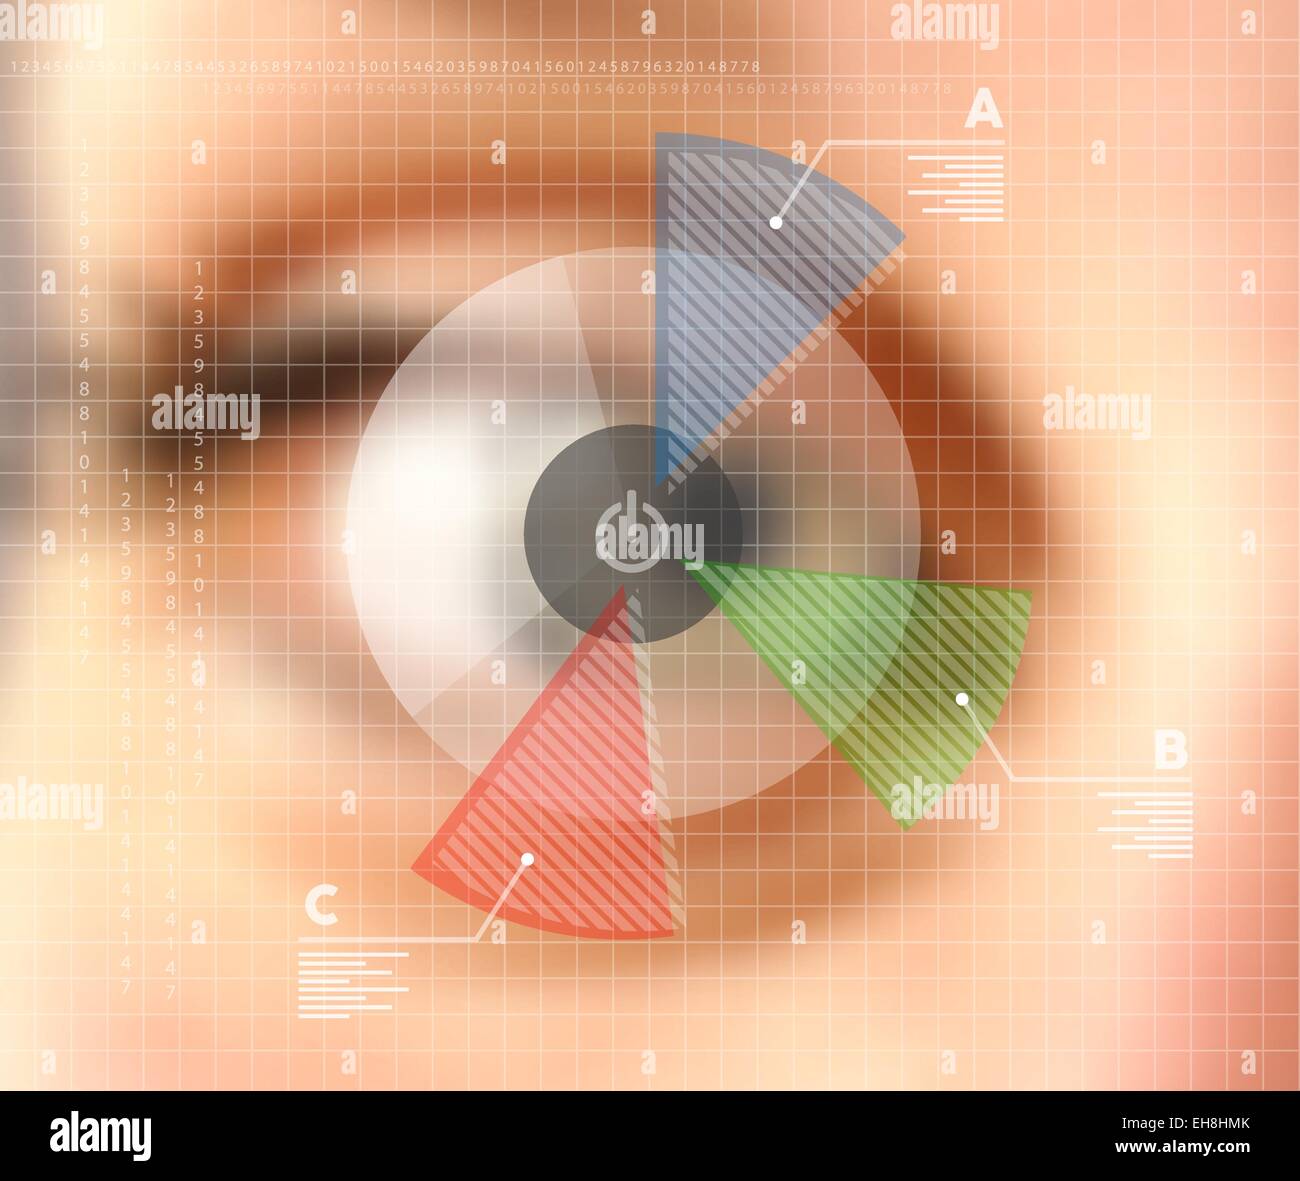 Menschliches Auge unscharf Effekt mit virtuellen Bildschirm-Infografiken. Ideen RGB web-app-Design, Technologie, Internet und Networking-Konzept Stock Vektor